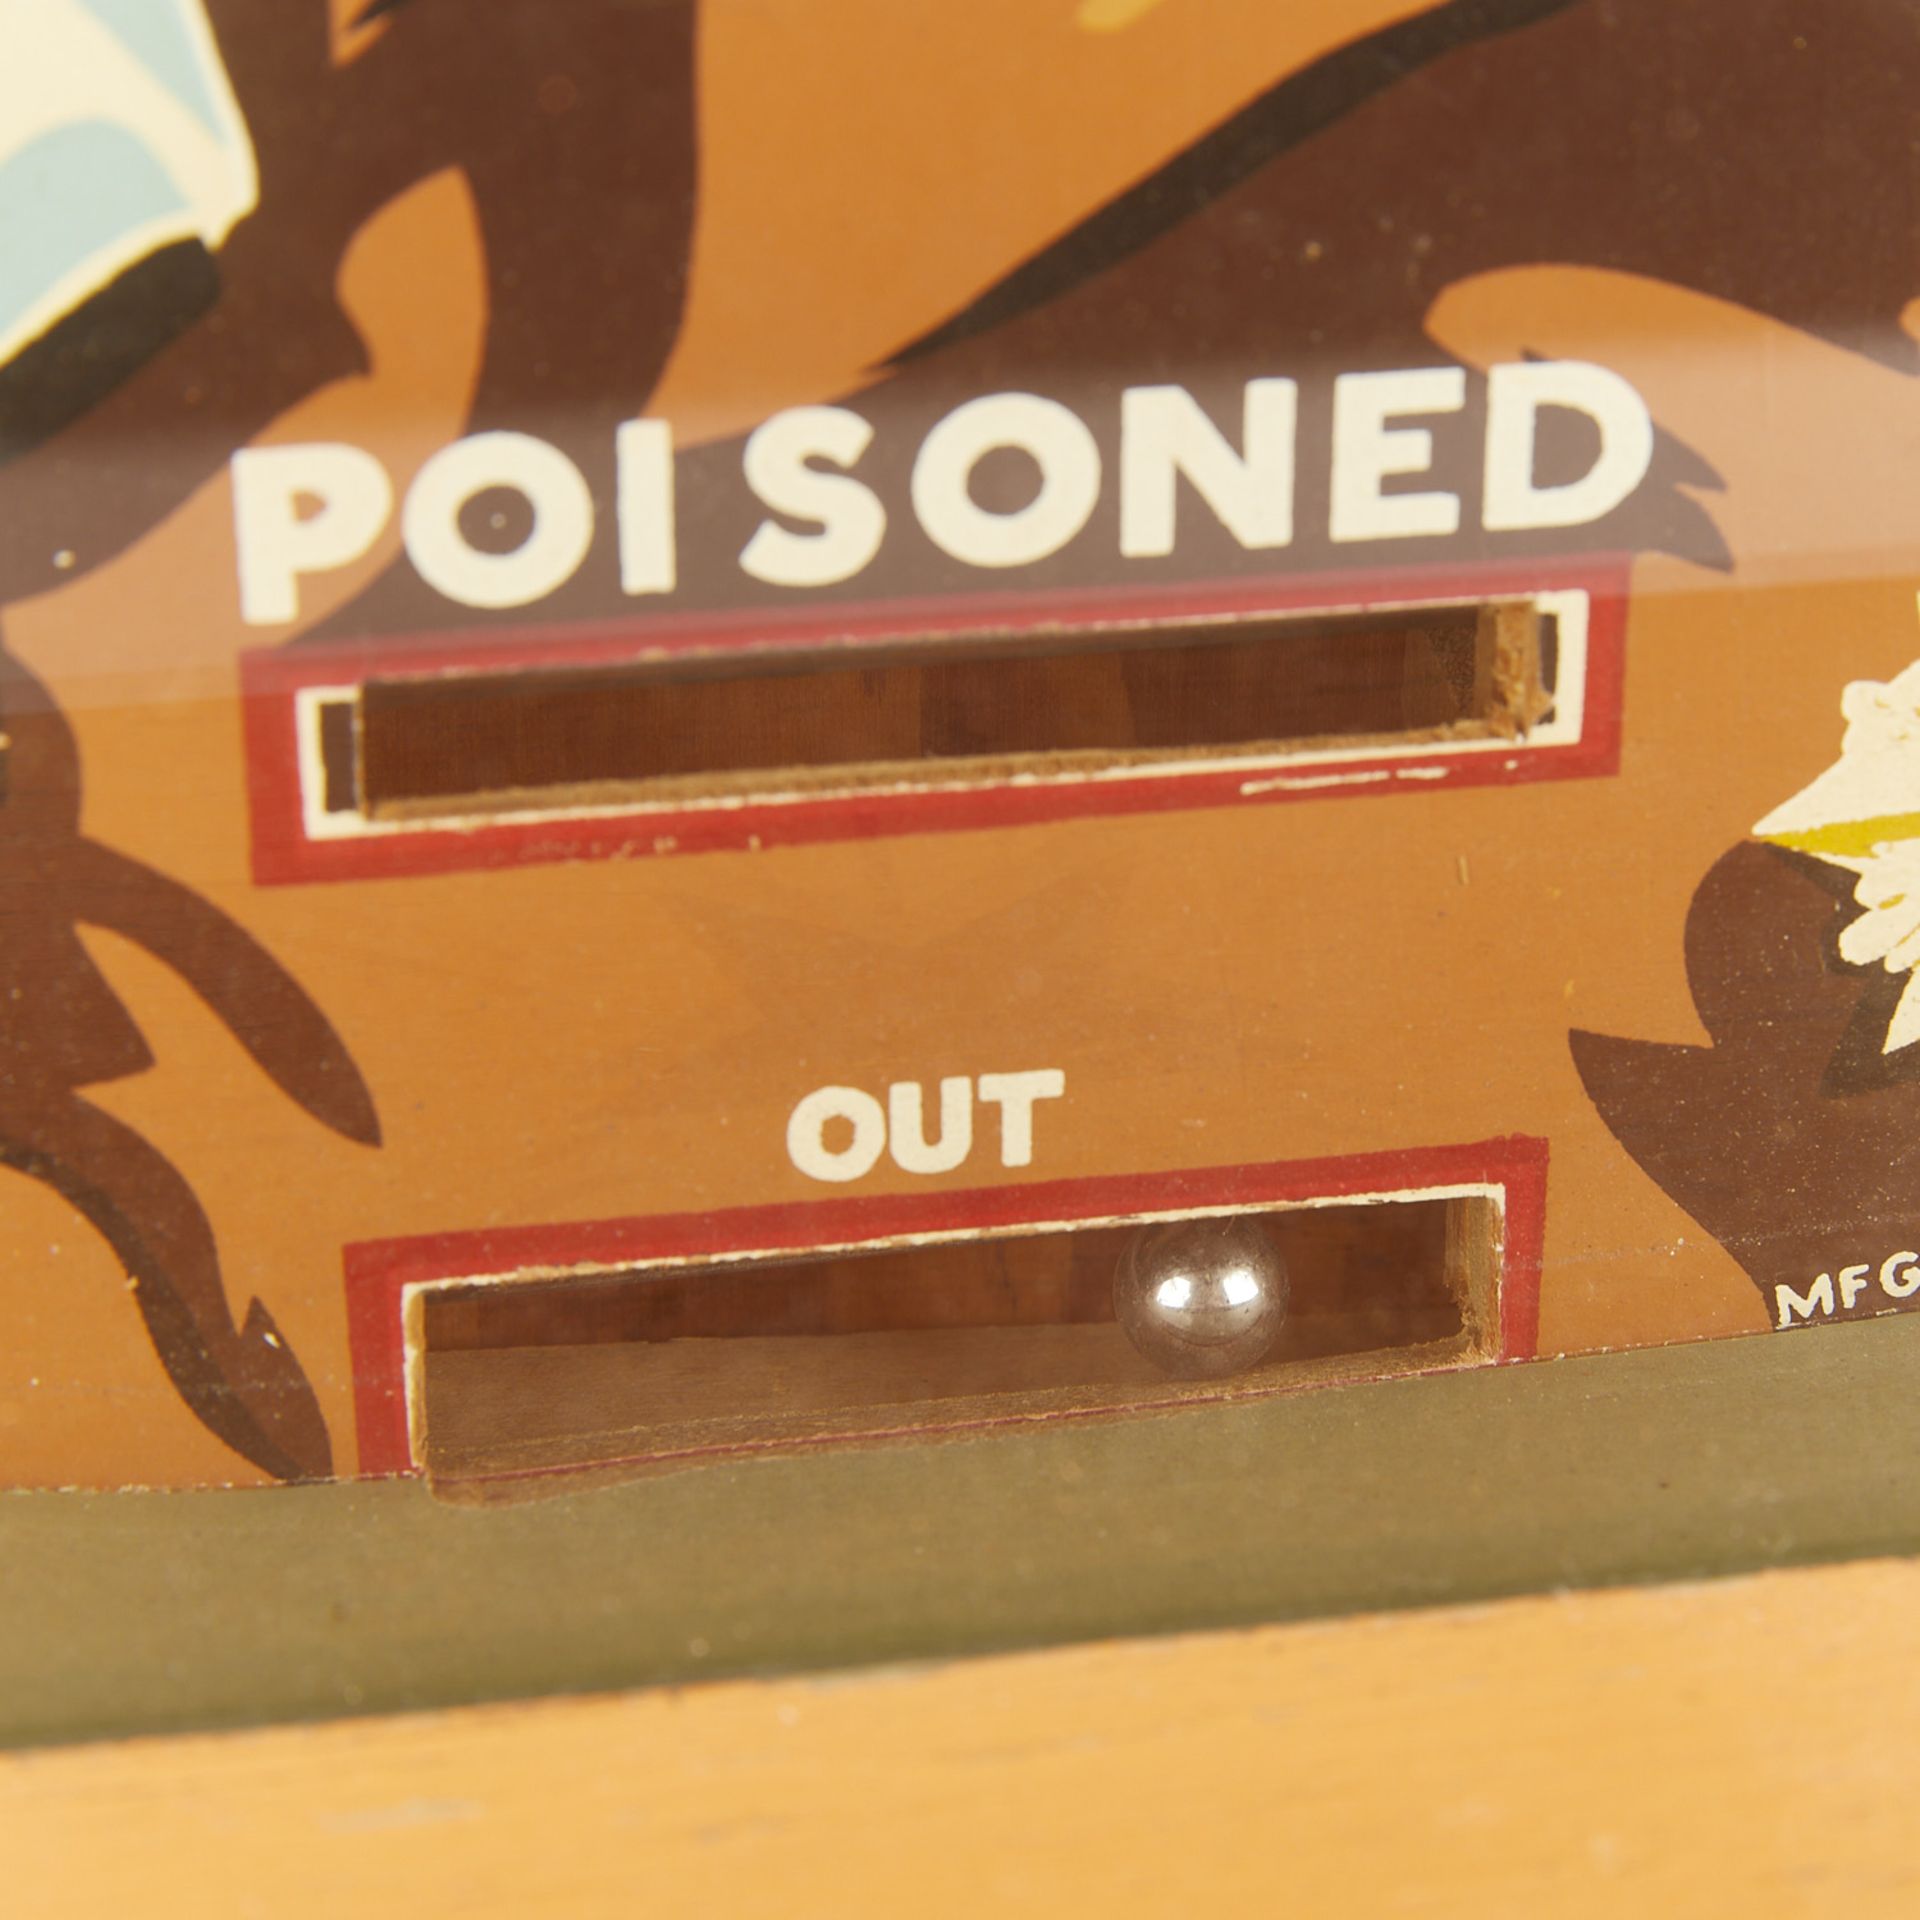 One Cent "Poison This Rat" 1941 Arcade Game - Bild 16 aus 23